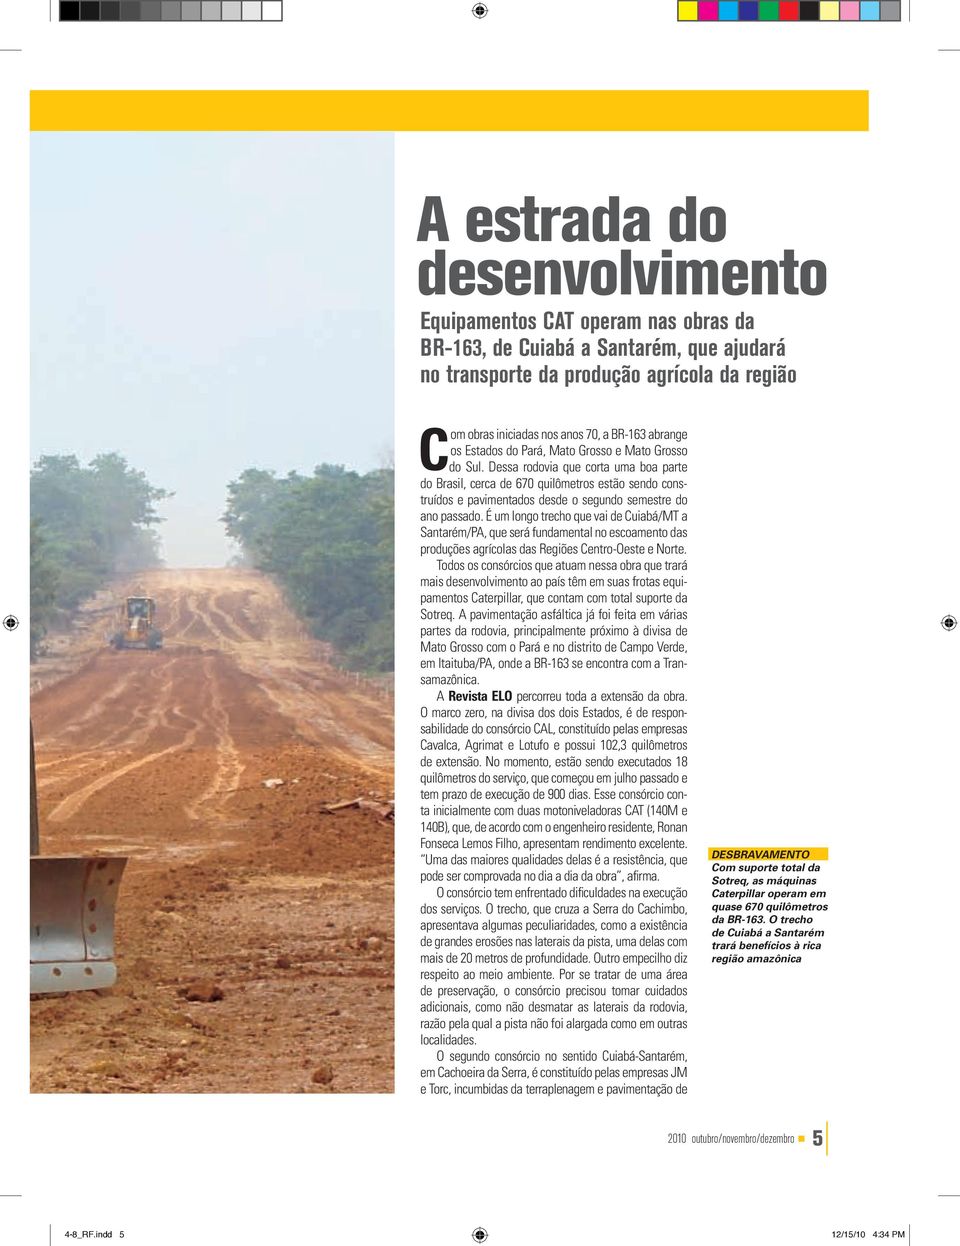 Dessa rodovia que corta uma boa parte do Brasil, cerca de 670 quilômetros estão sendo construídos e pavimentados desde o segundo semestre do ano passado.